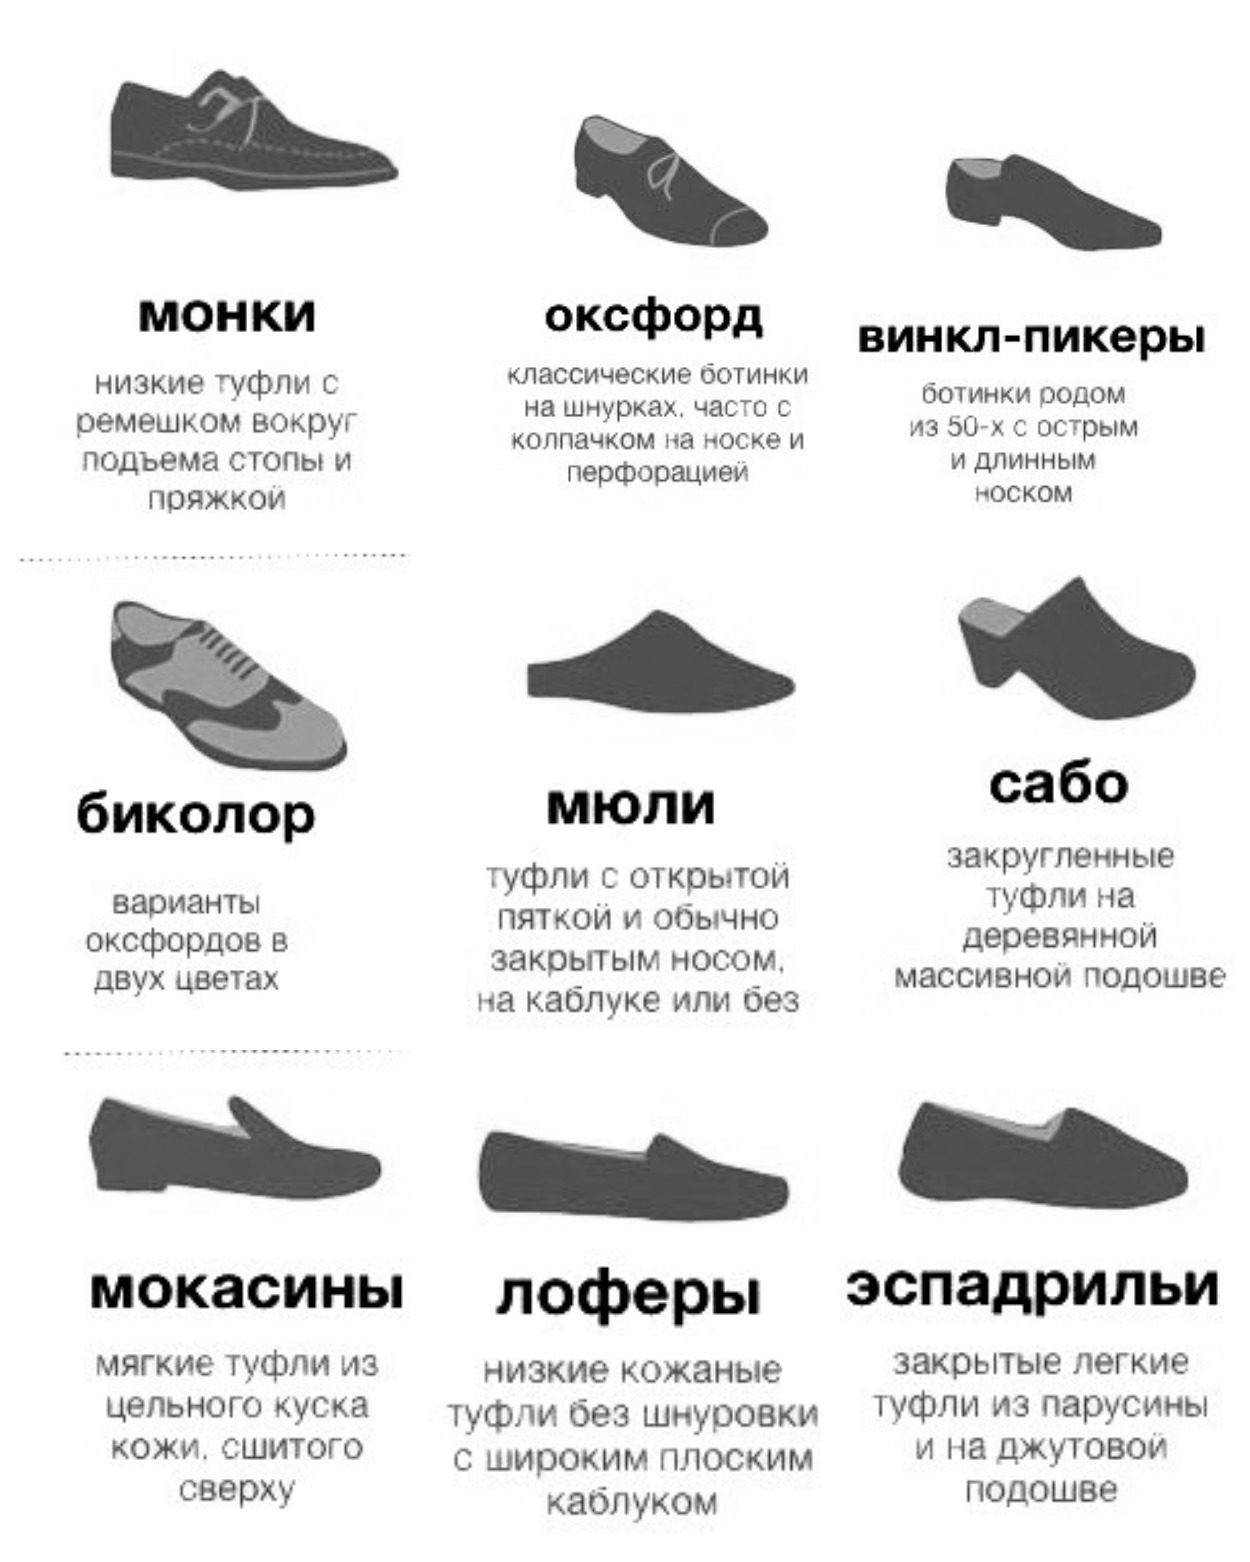 Название мужских ботинок. Виды женской обуви. Типы женской обуви названия. Название ботинок женских. Название туфель женских.